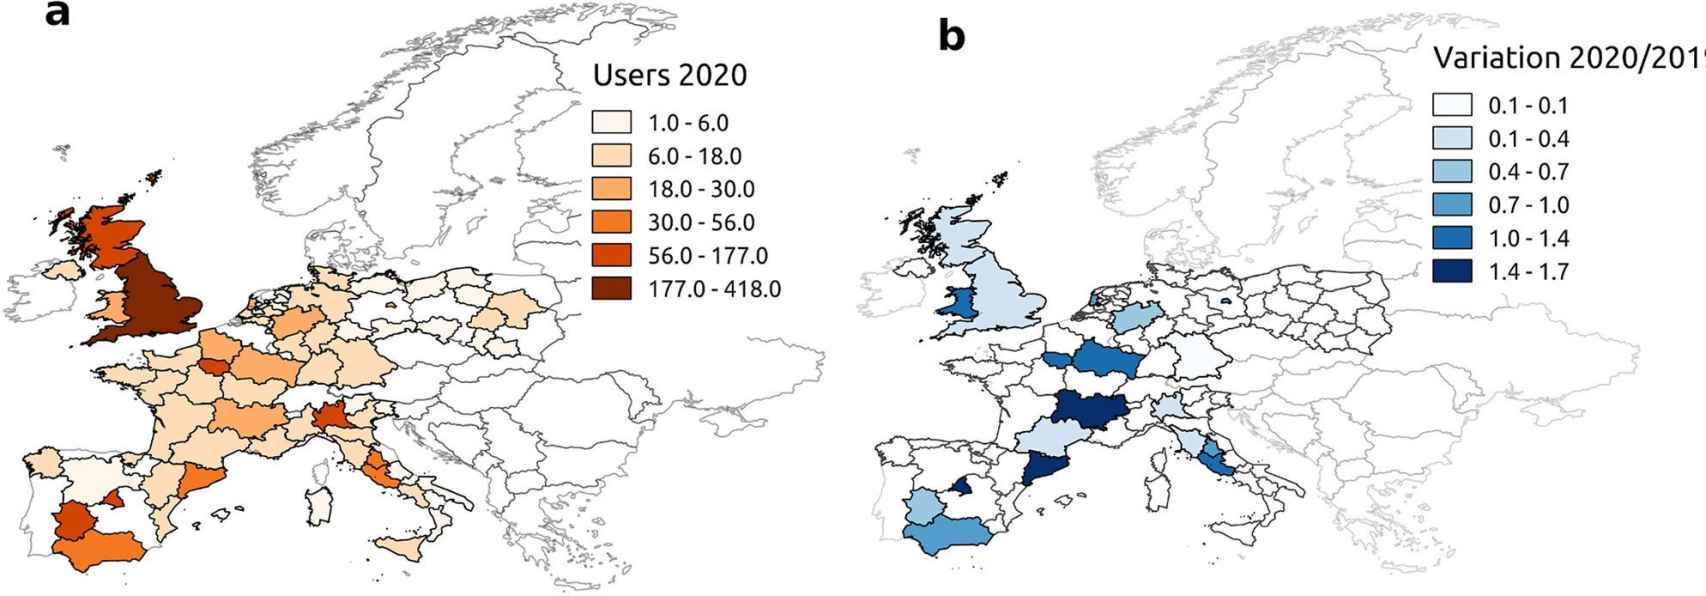 Mensajes de Twitter relacionados con neumonía en Europa a principios de 2020